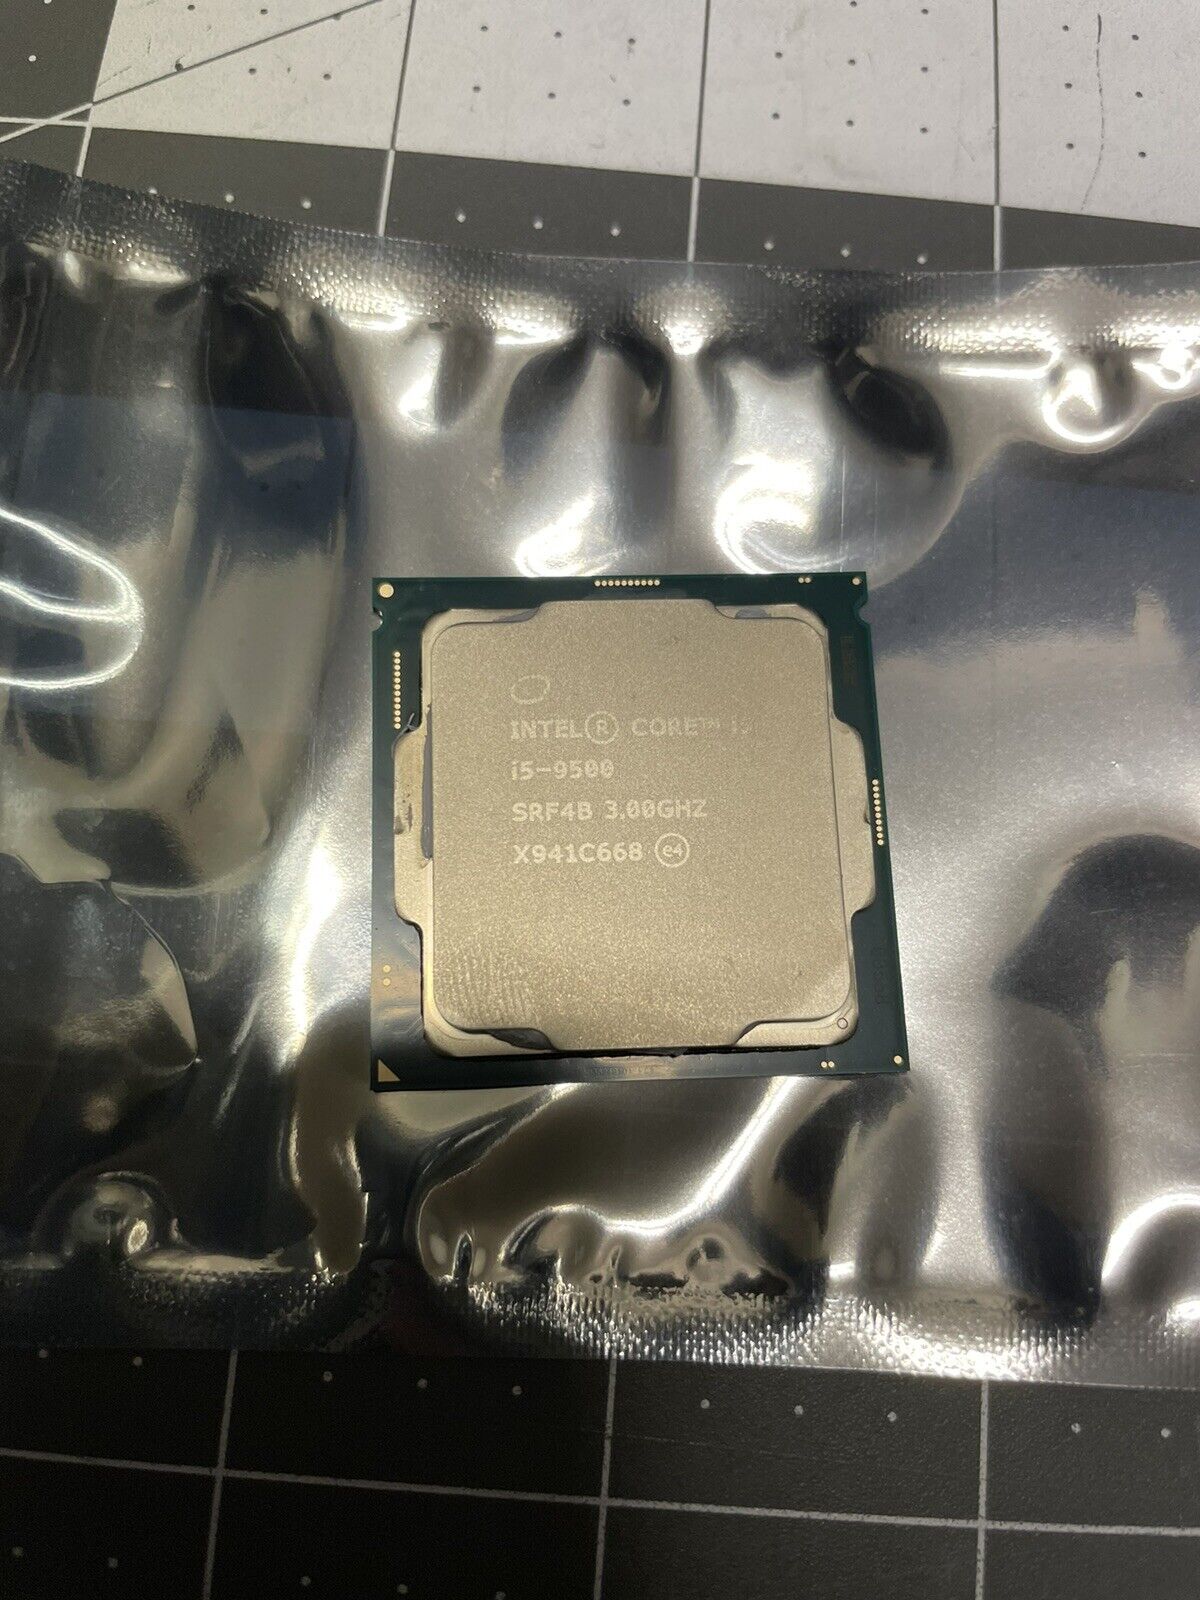 [new System Pull] Intel Core i5-9500 3.00ghz Processor (SRF4B)